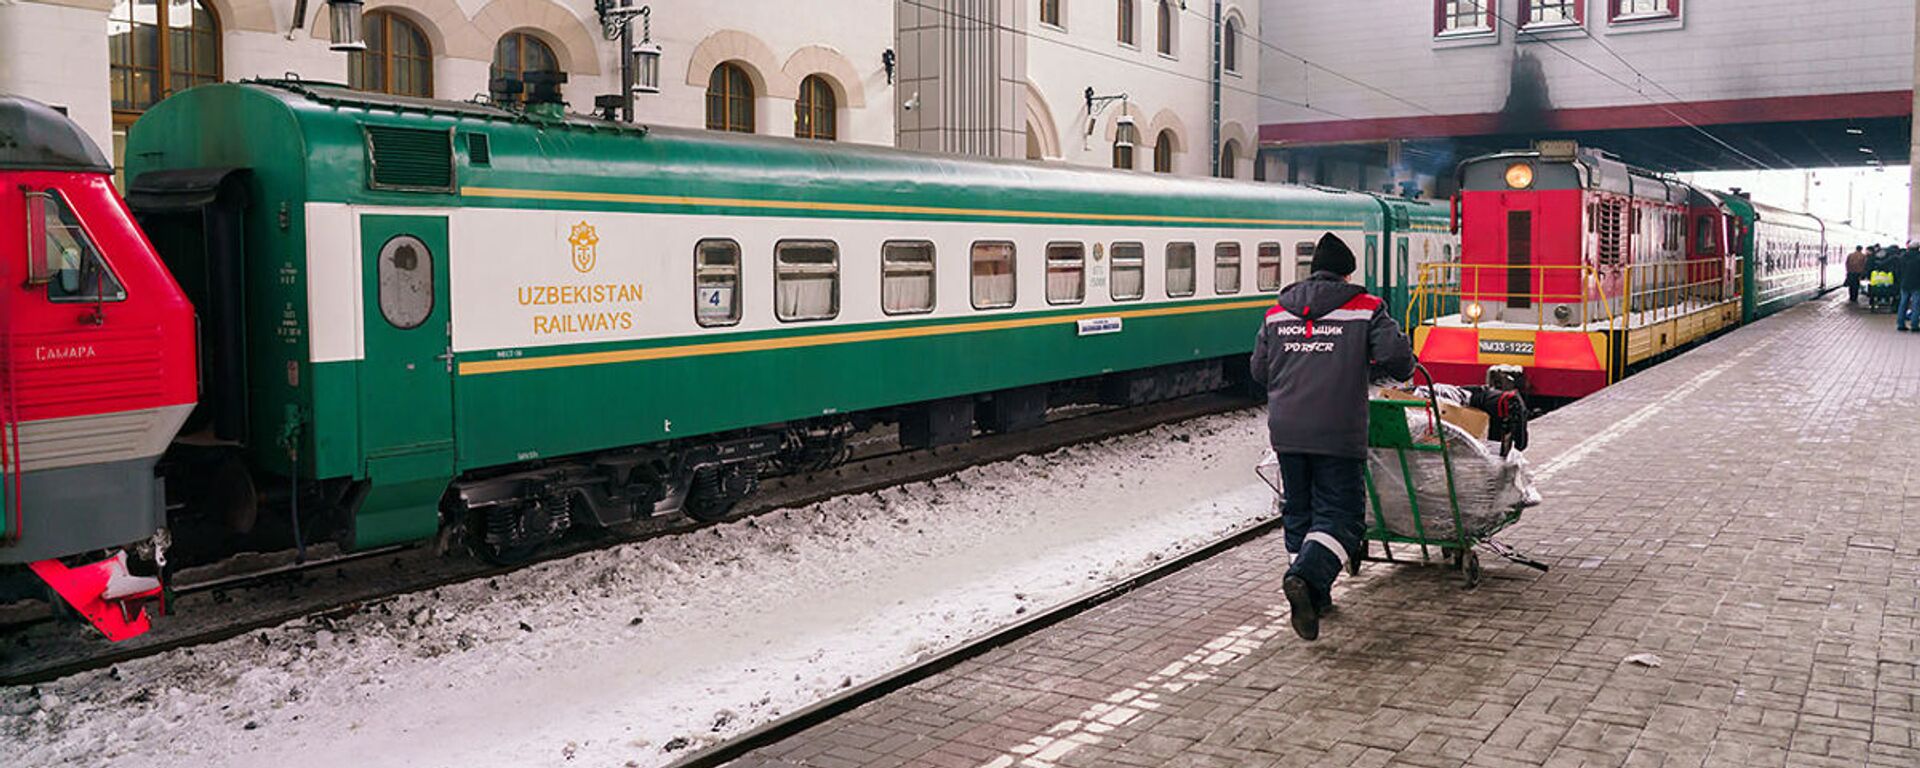 Поезд из Узбекистана на железнодорожном вокзале в Москве - Sputnik Ўзбекистон, 1920, 02.09.2021